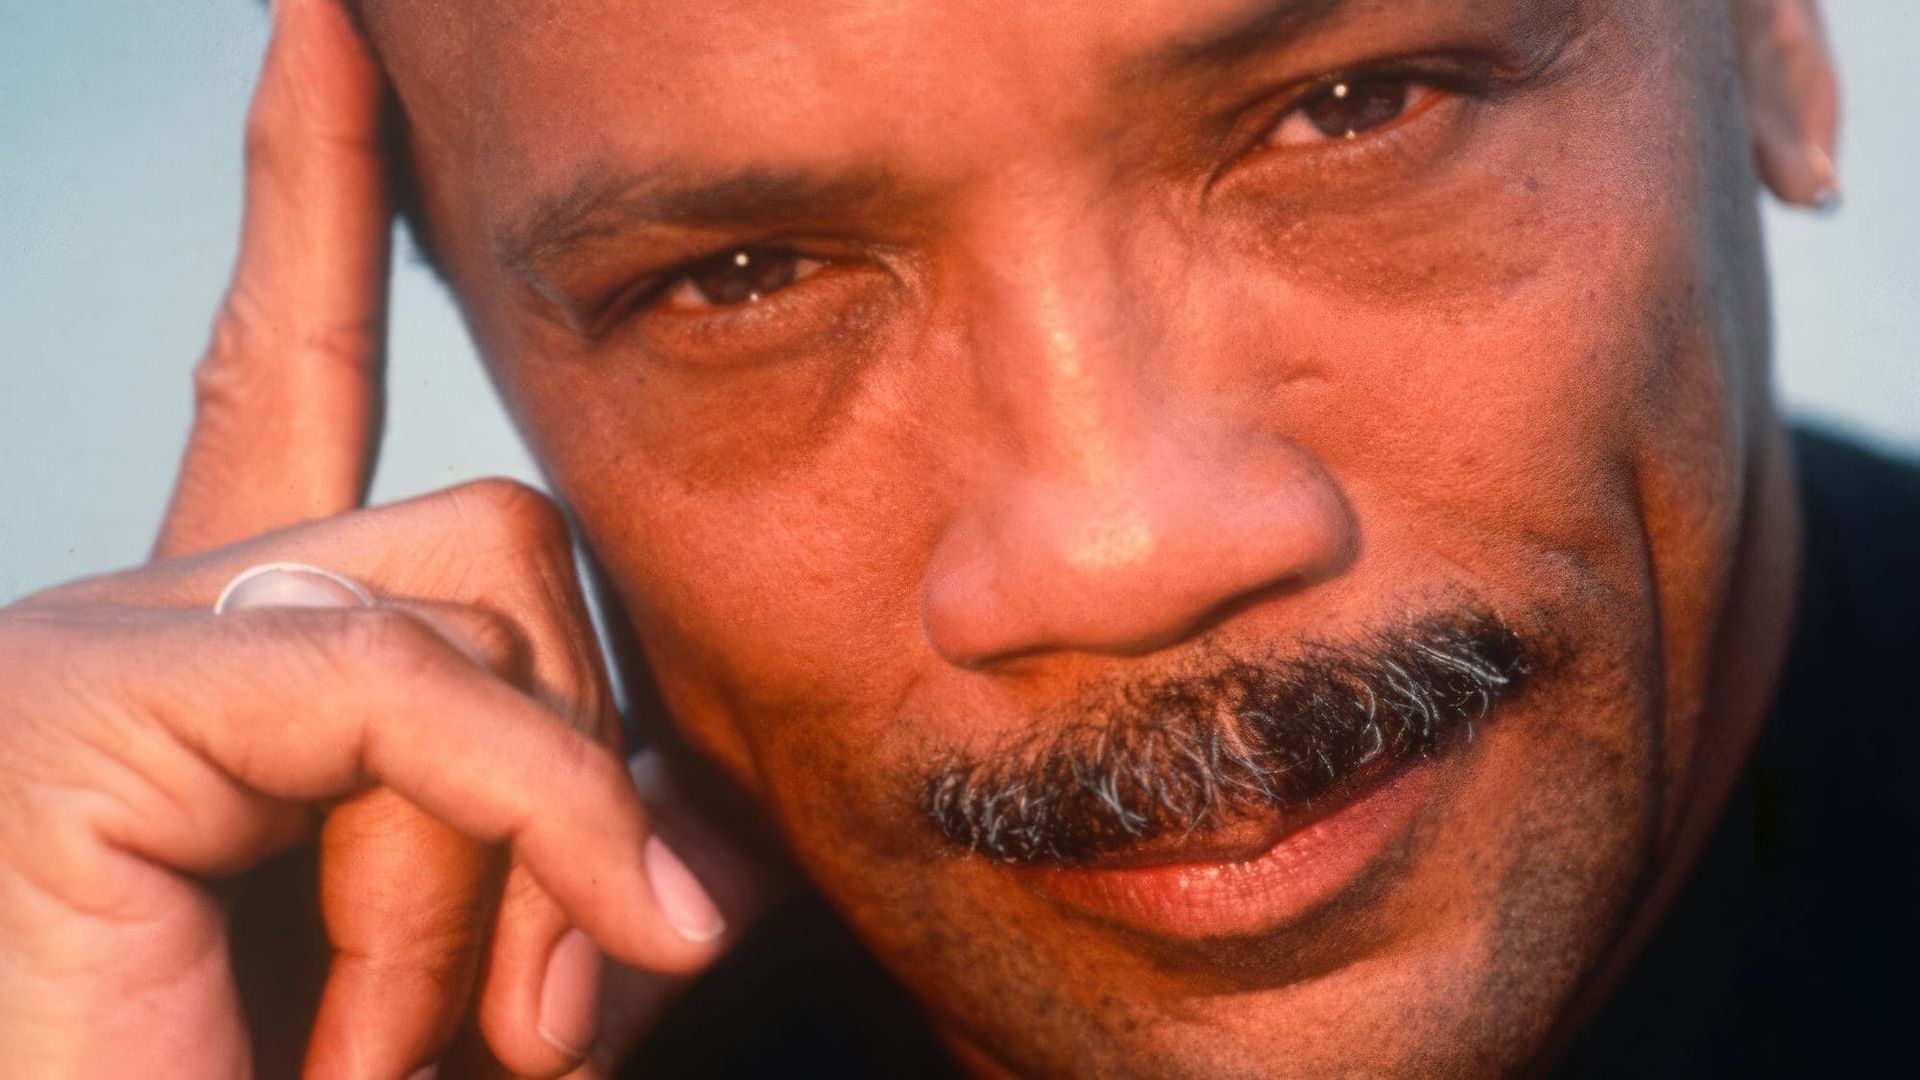 Listen Up: The Lives of Quincy Jones background